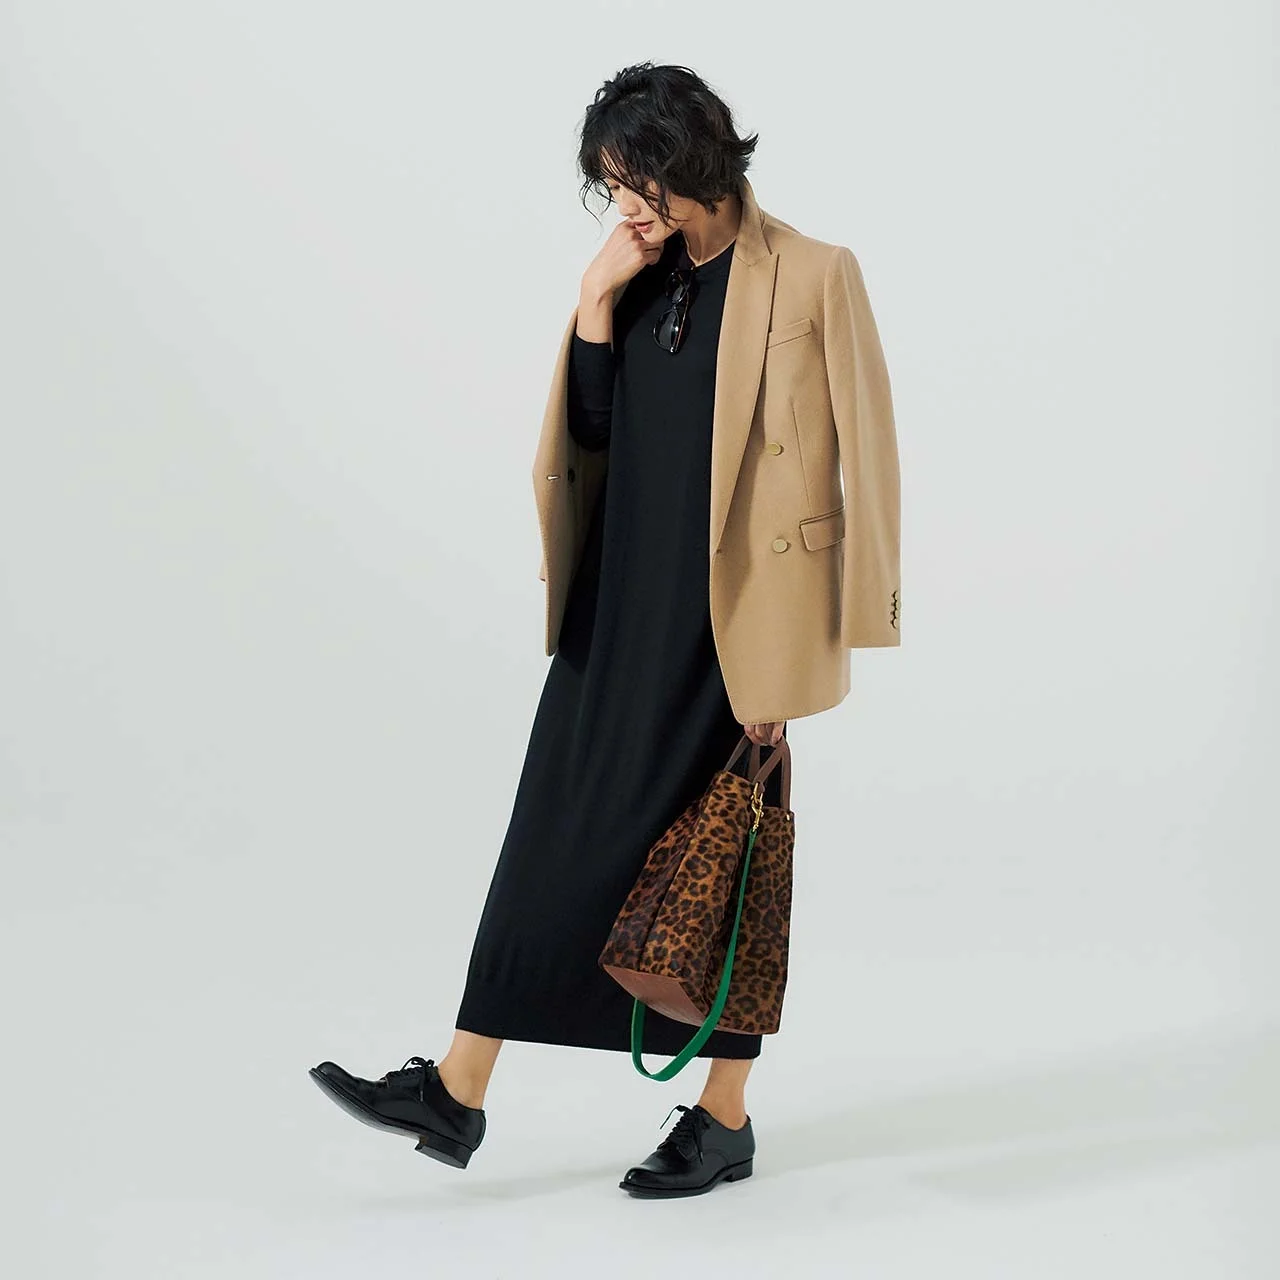 キャメルのジャケット＆ニットワンピースを着たモデルの渡辺佳子さん